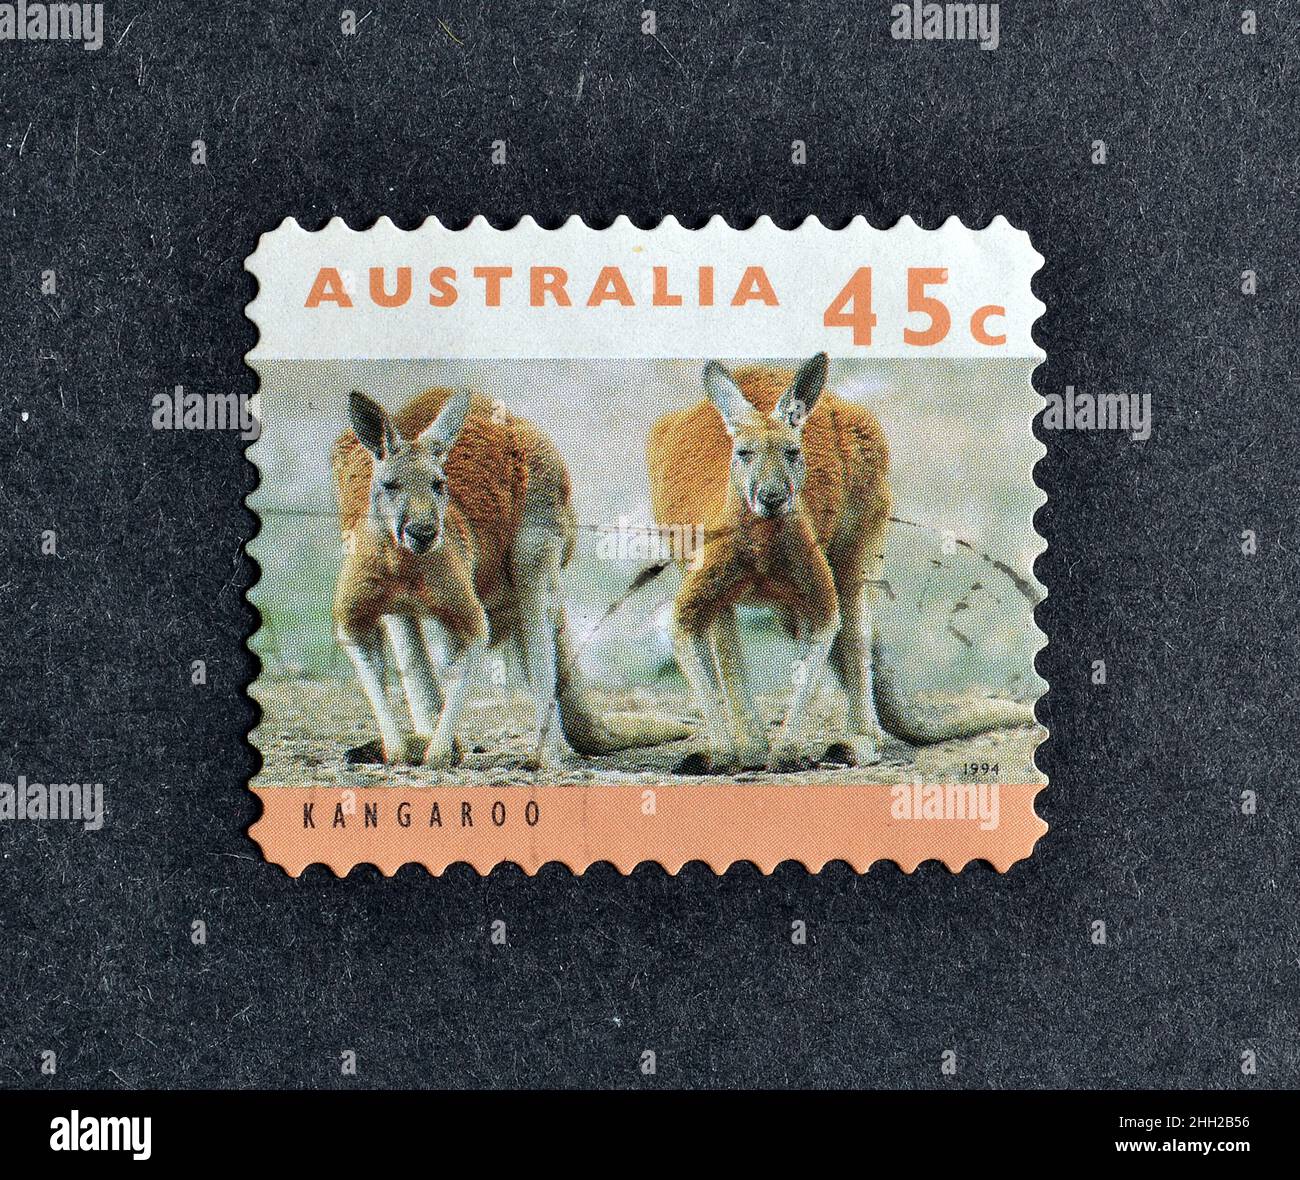 Abgesagte Briefmarke gedruckt von Australien, die Kangaroo zeigt, um 1994. Stockfoto